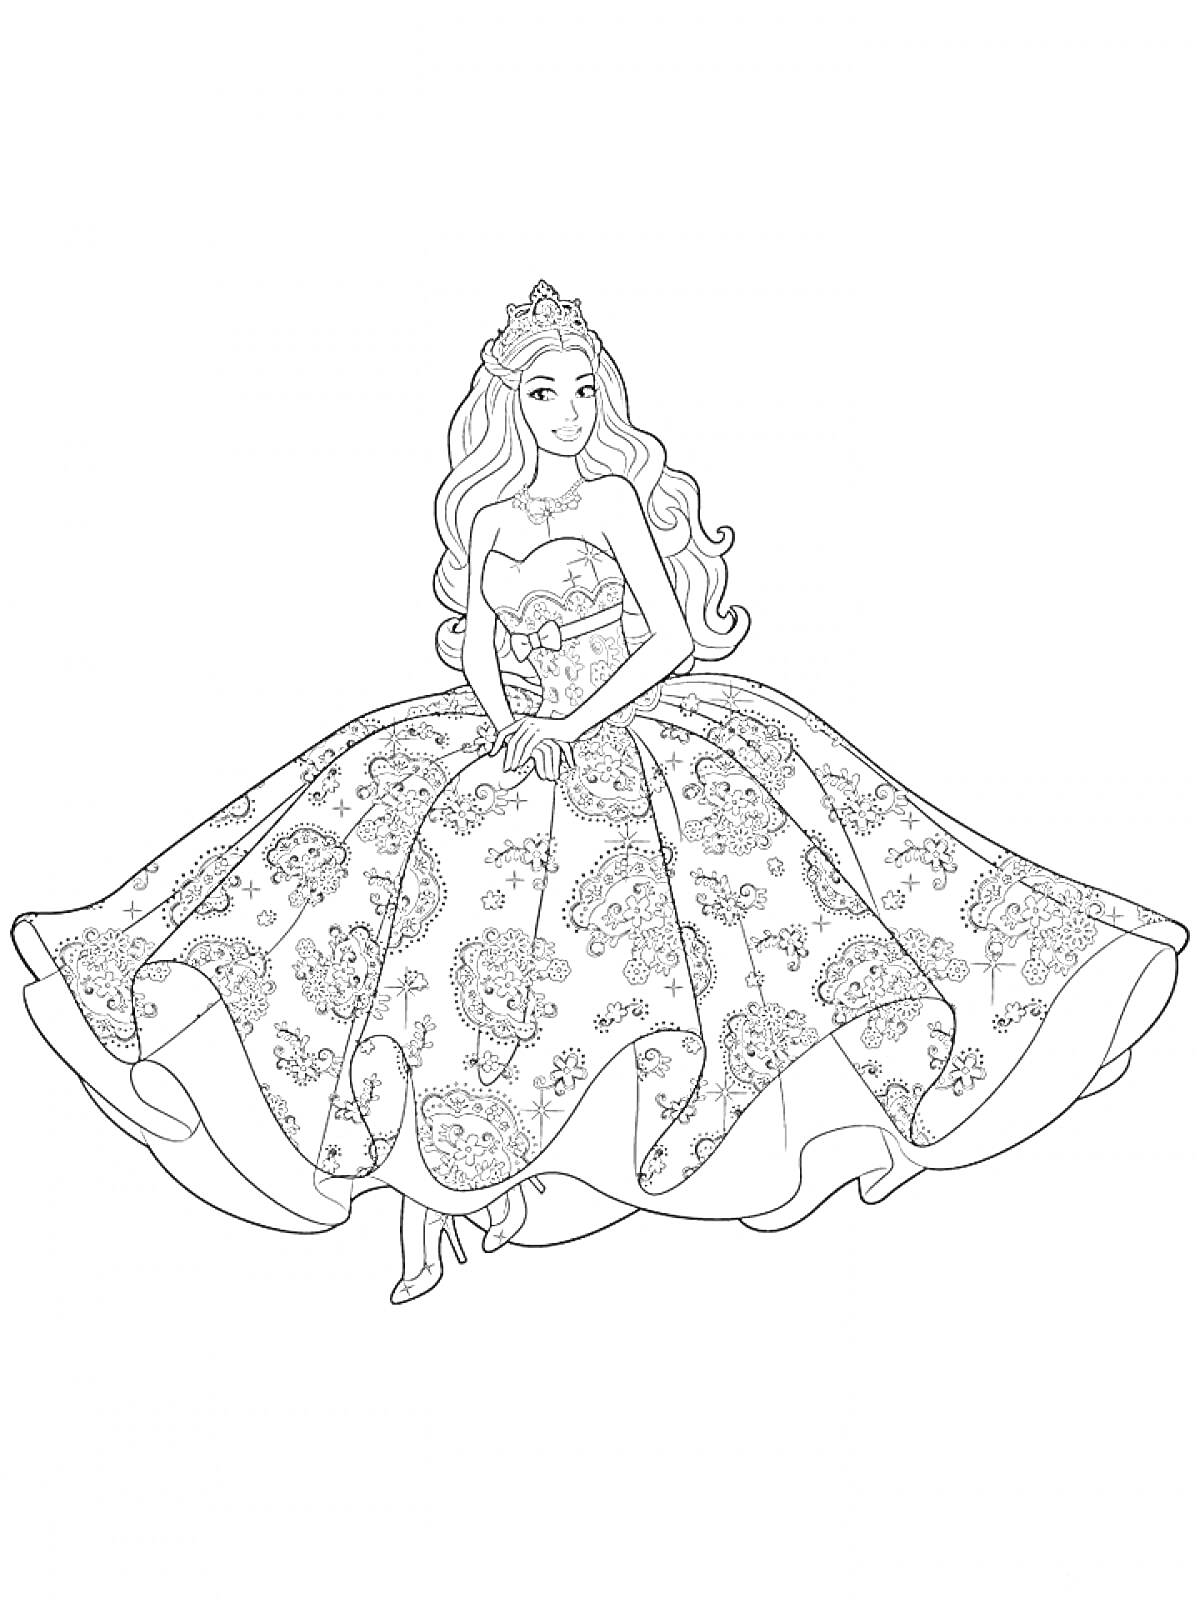 Раскраска Барби в пышном бальном платье с узорами и диадемой на голове